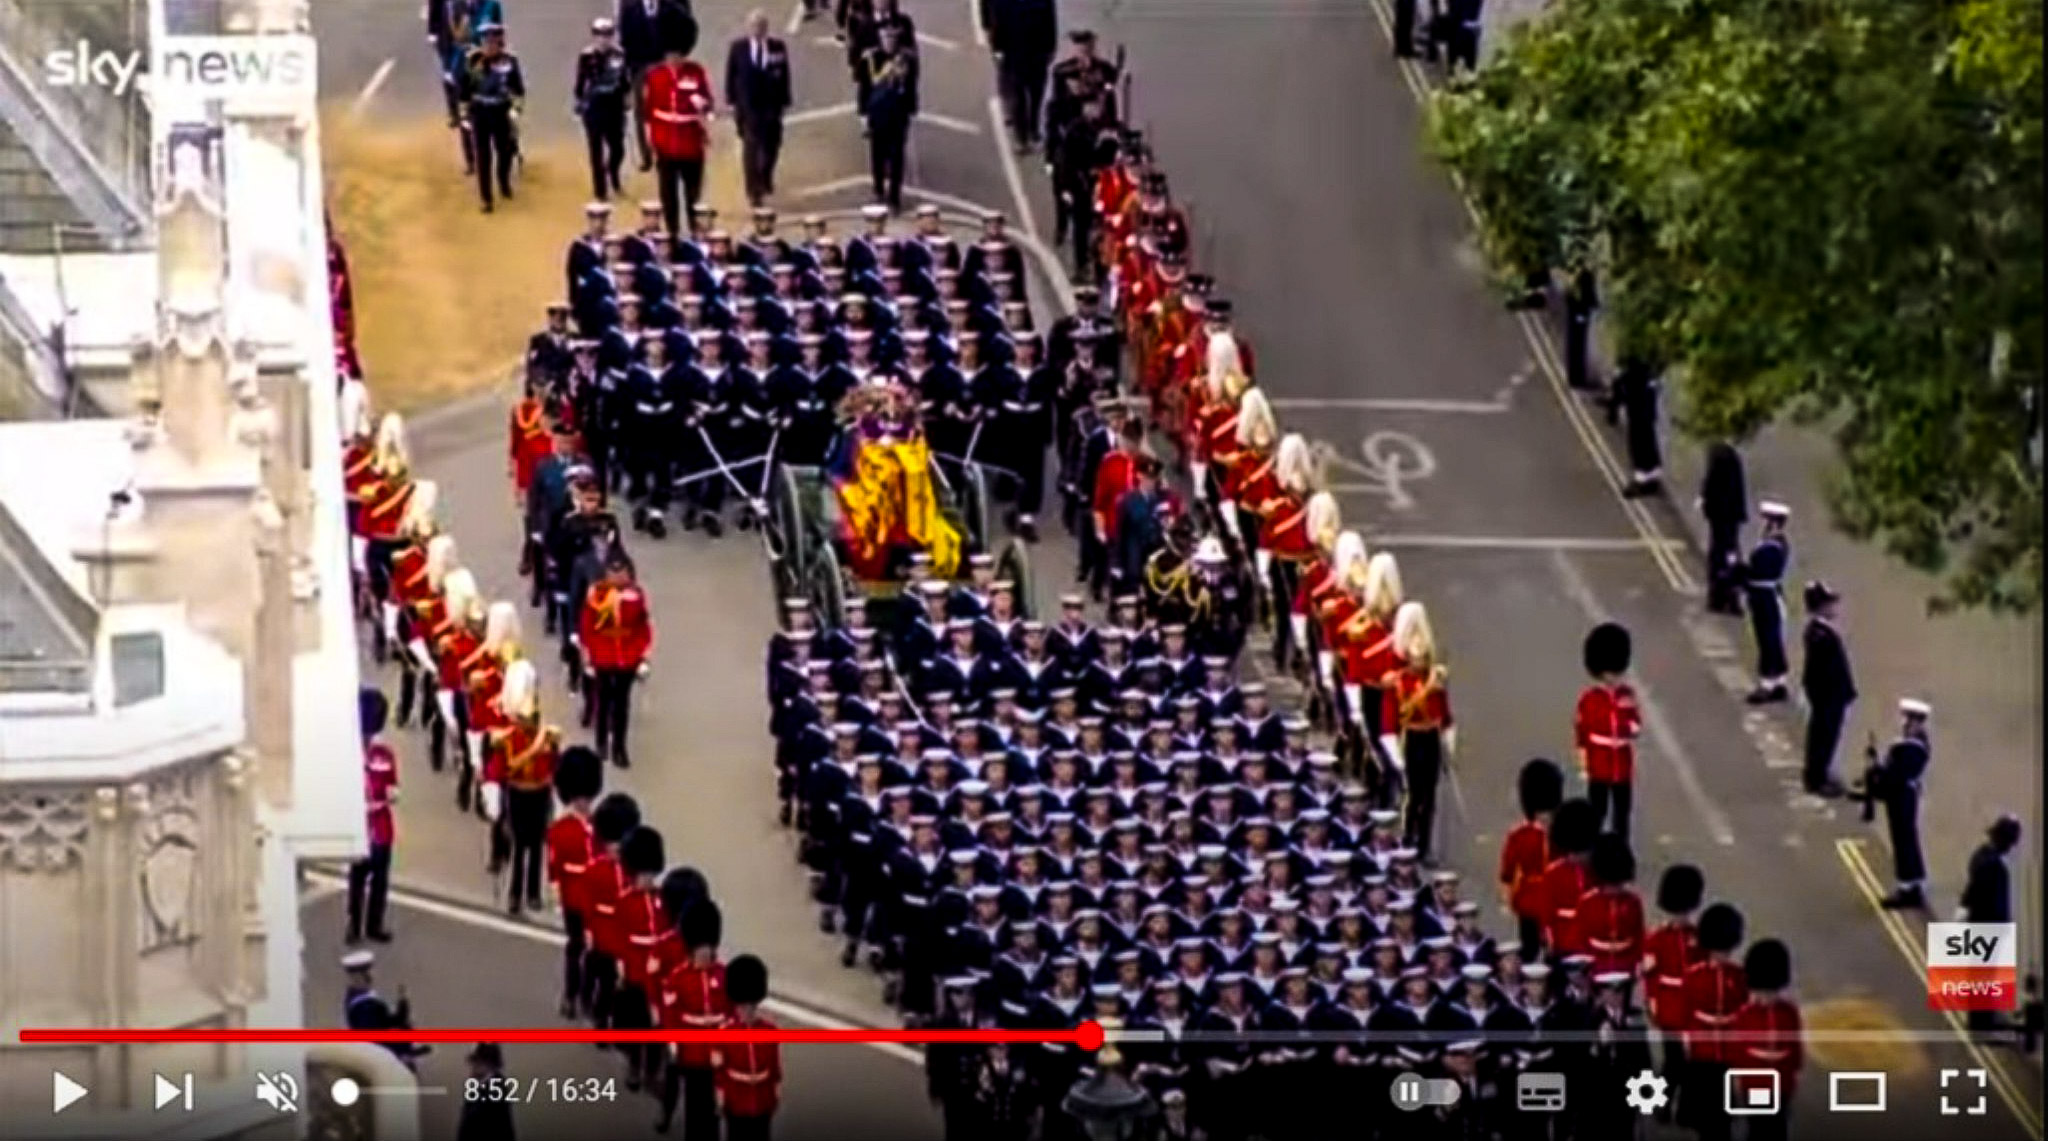 Цитата из видео «Queen’s coffin enters Westminster Abbey» пользователя Sky News. youtube.com